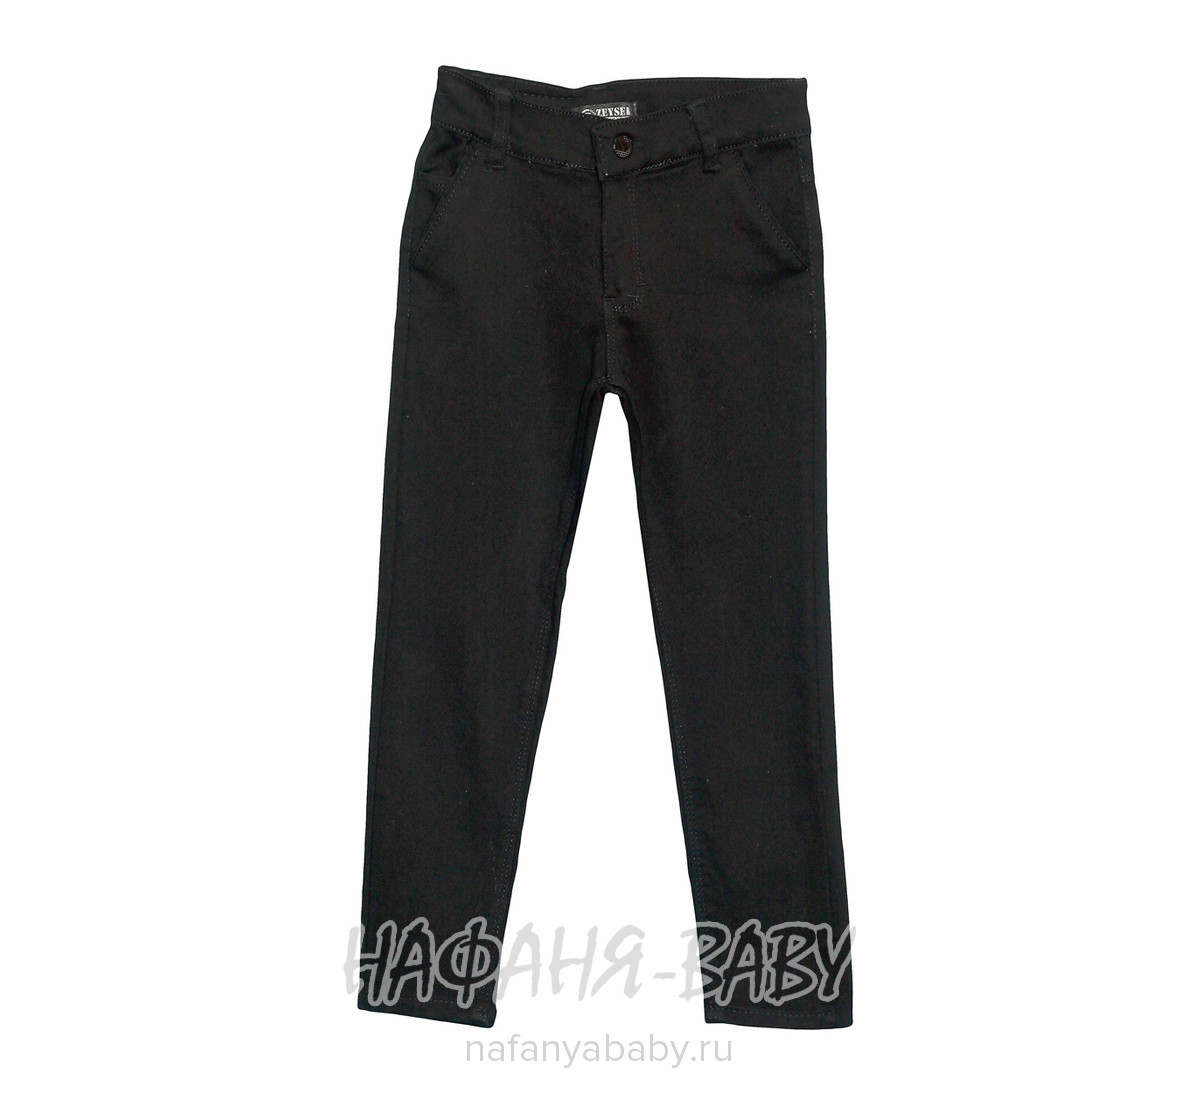 Детские брюки для мальчика ZEISER, купить в интернет магазине Нафаня. арт: 11150.